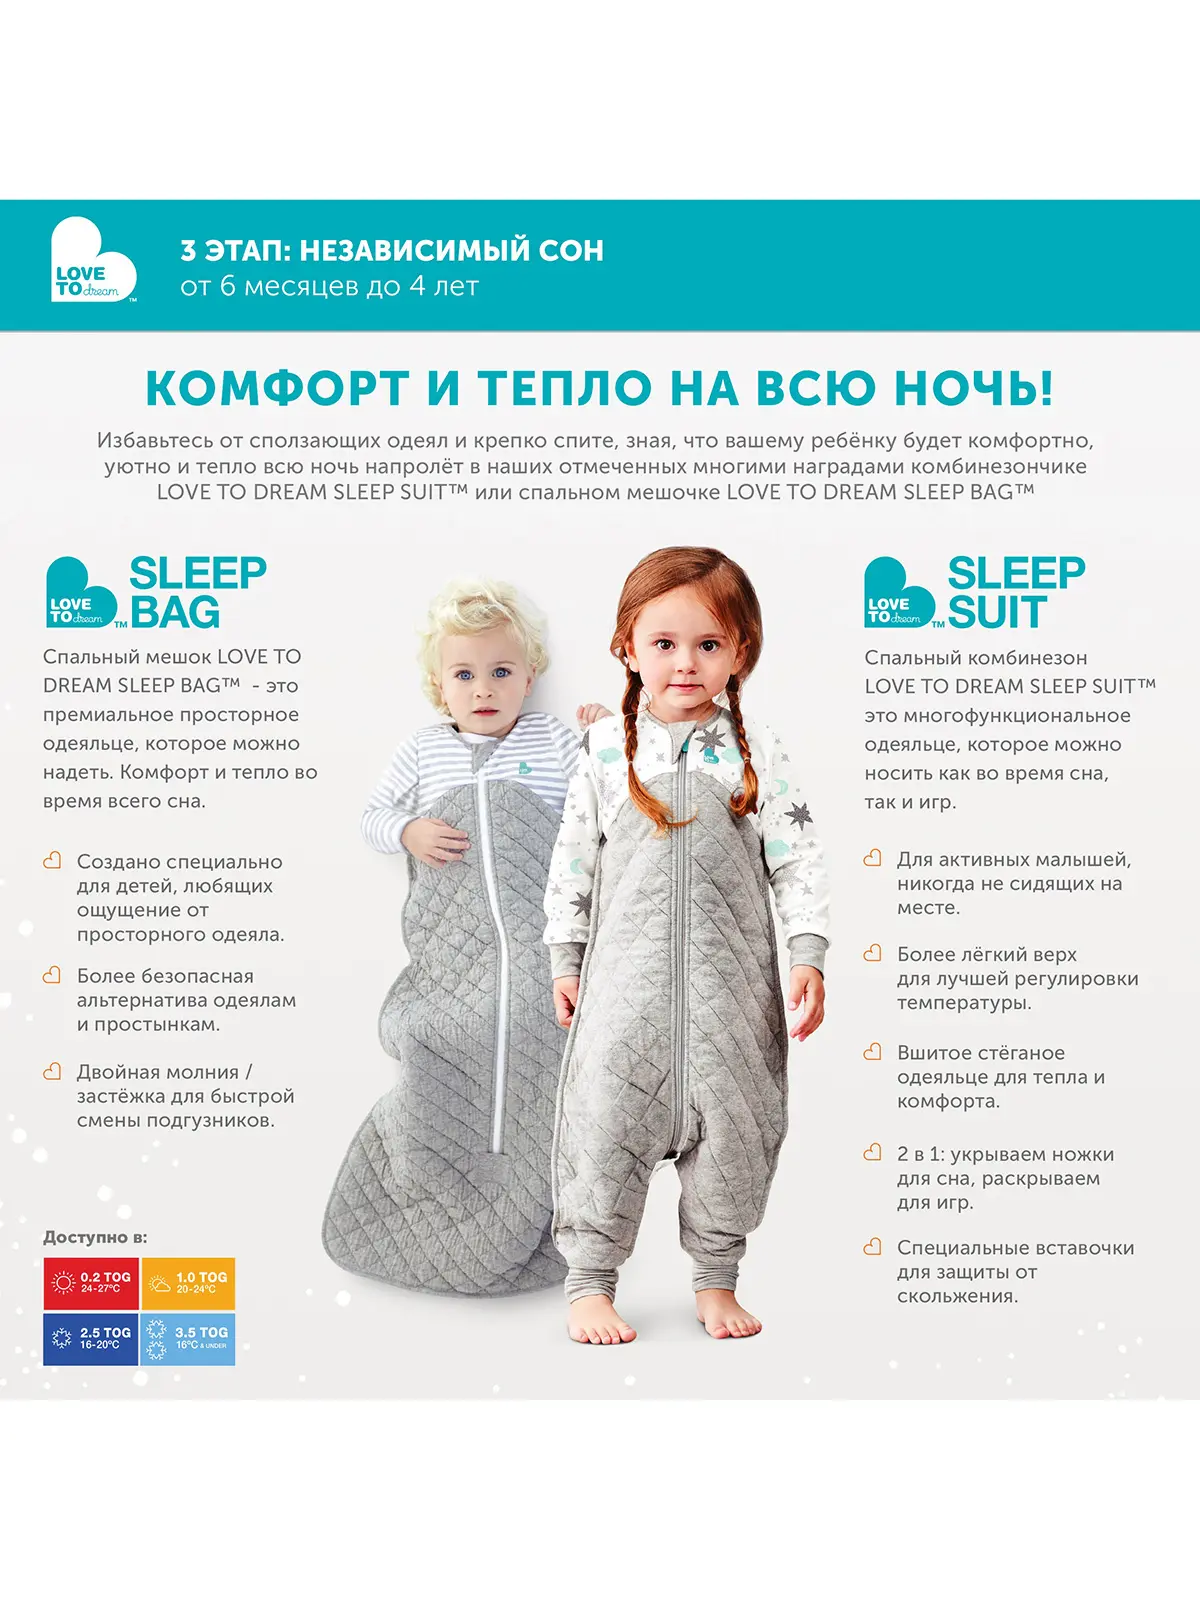 Спальный костюм Sleep Suit 0.2 TOG (12-24 мес.) - фото